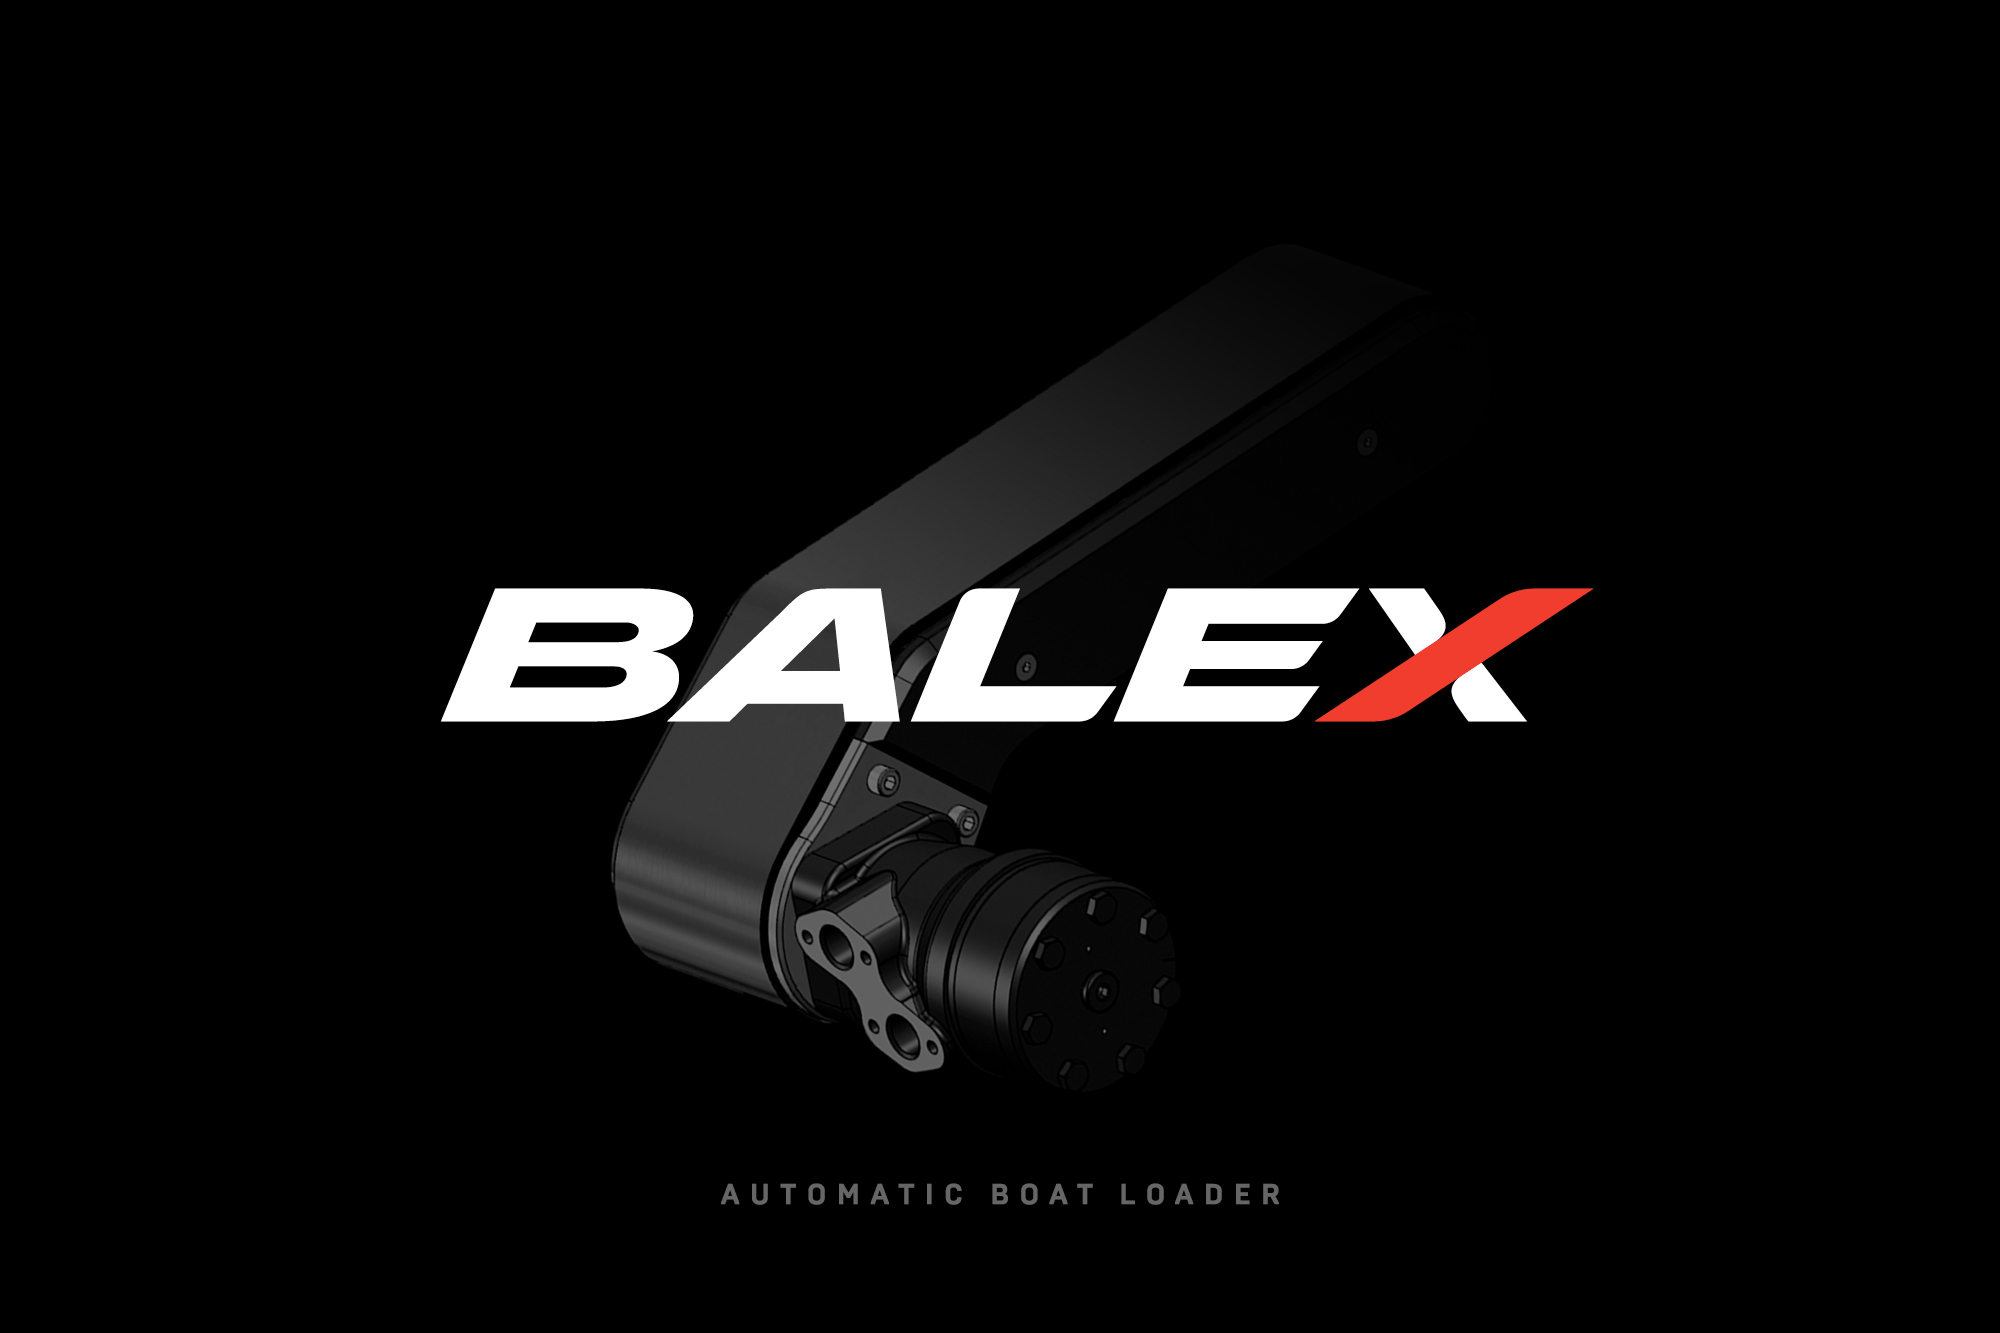 Balex Wordmark Brand Identity Onfire Design